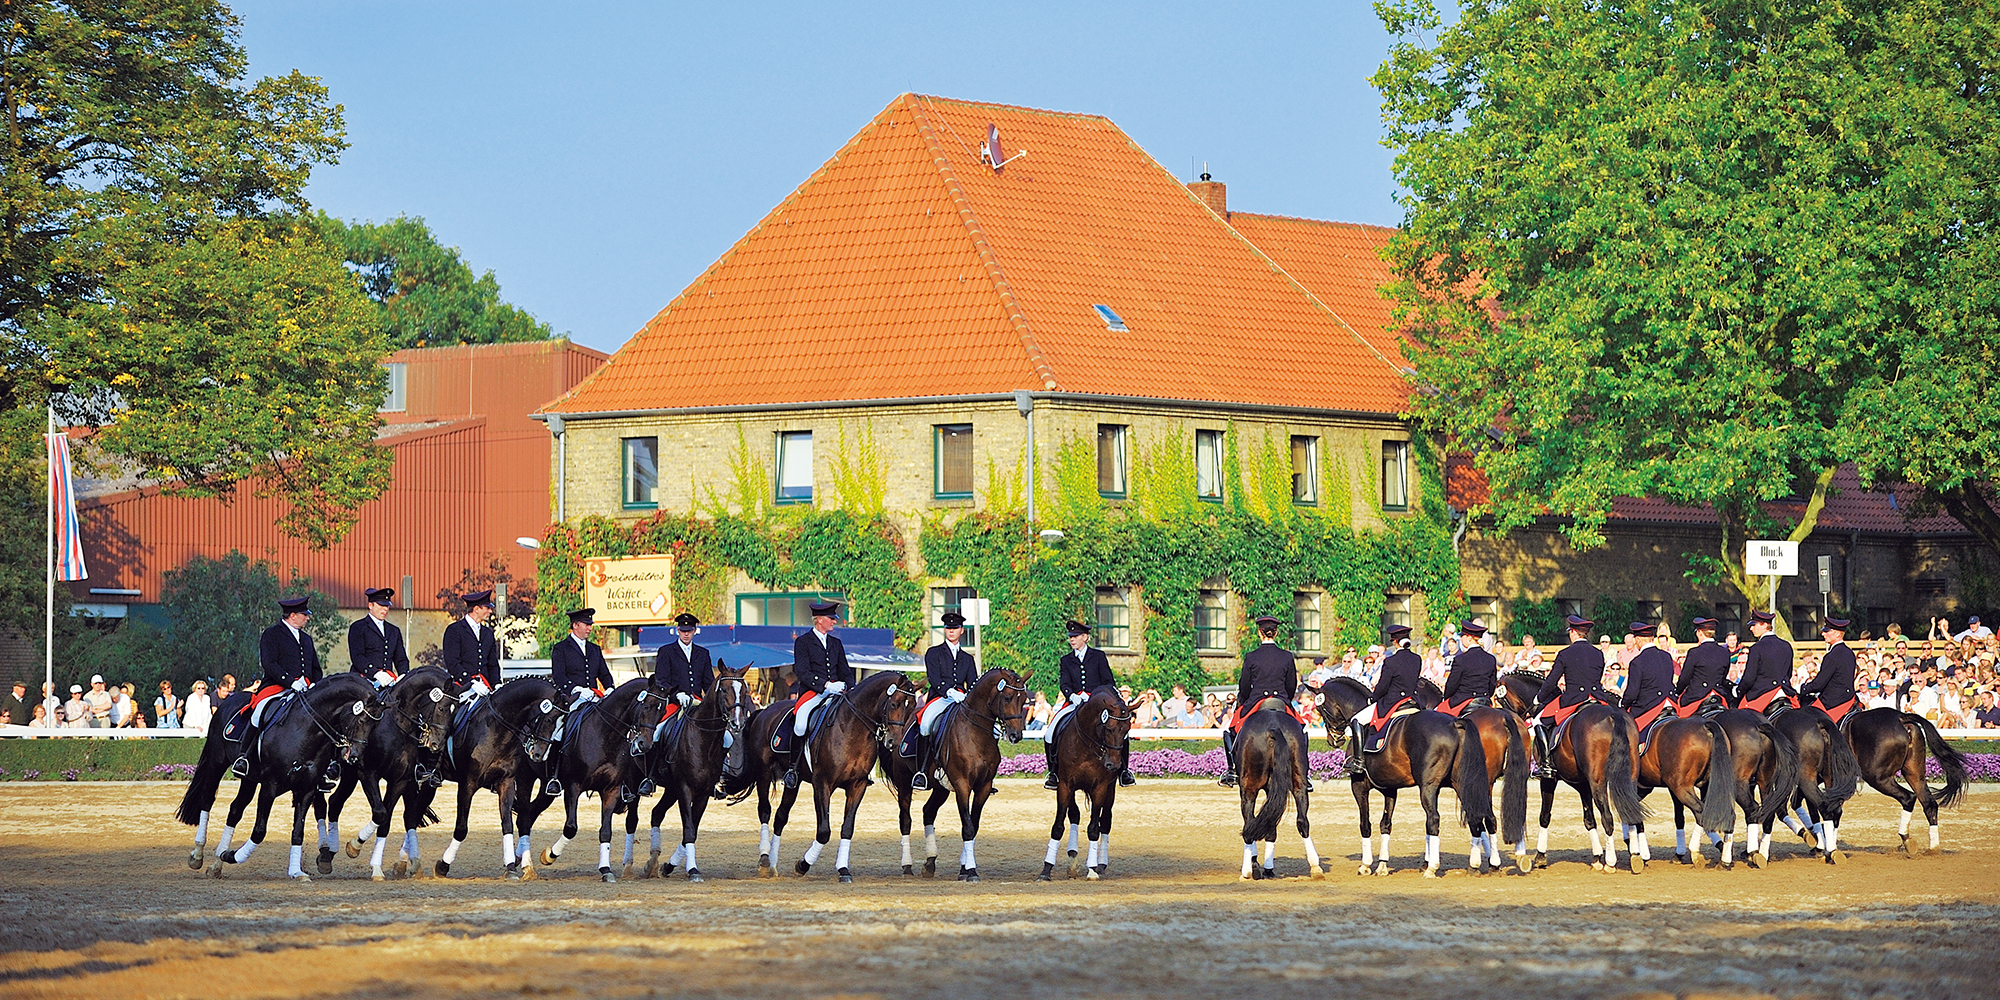 馬と共に生きる町＿ドイツ･ヴァーレンドルフを訪ねて